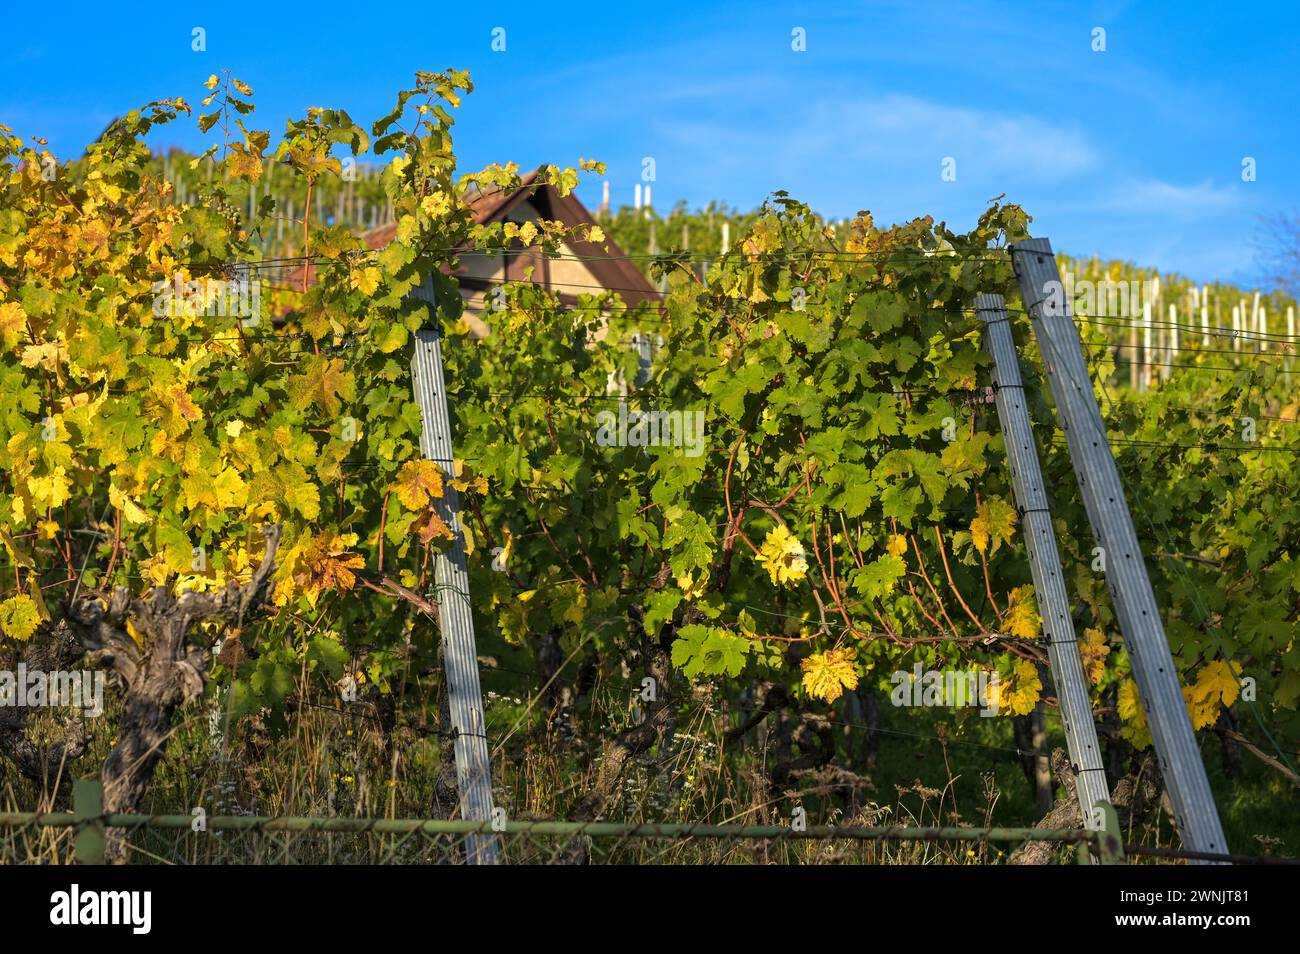 Weinberg nach der Traubenlese: Reben mit wild ausbreitenden Blättern in hellen Herbstfarben. Aufgenommen im Oktober in der Nähe von Stuttgart. Stockfoto